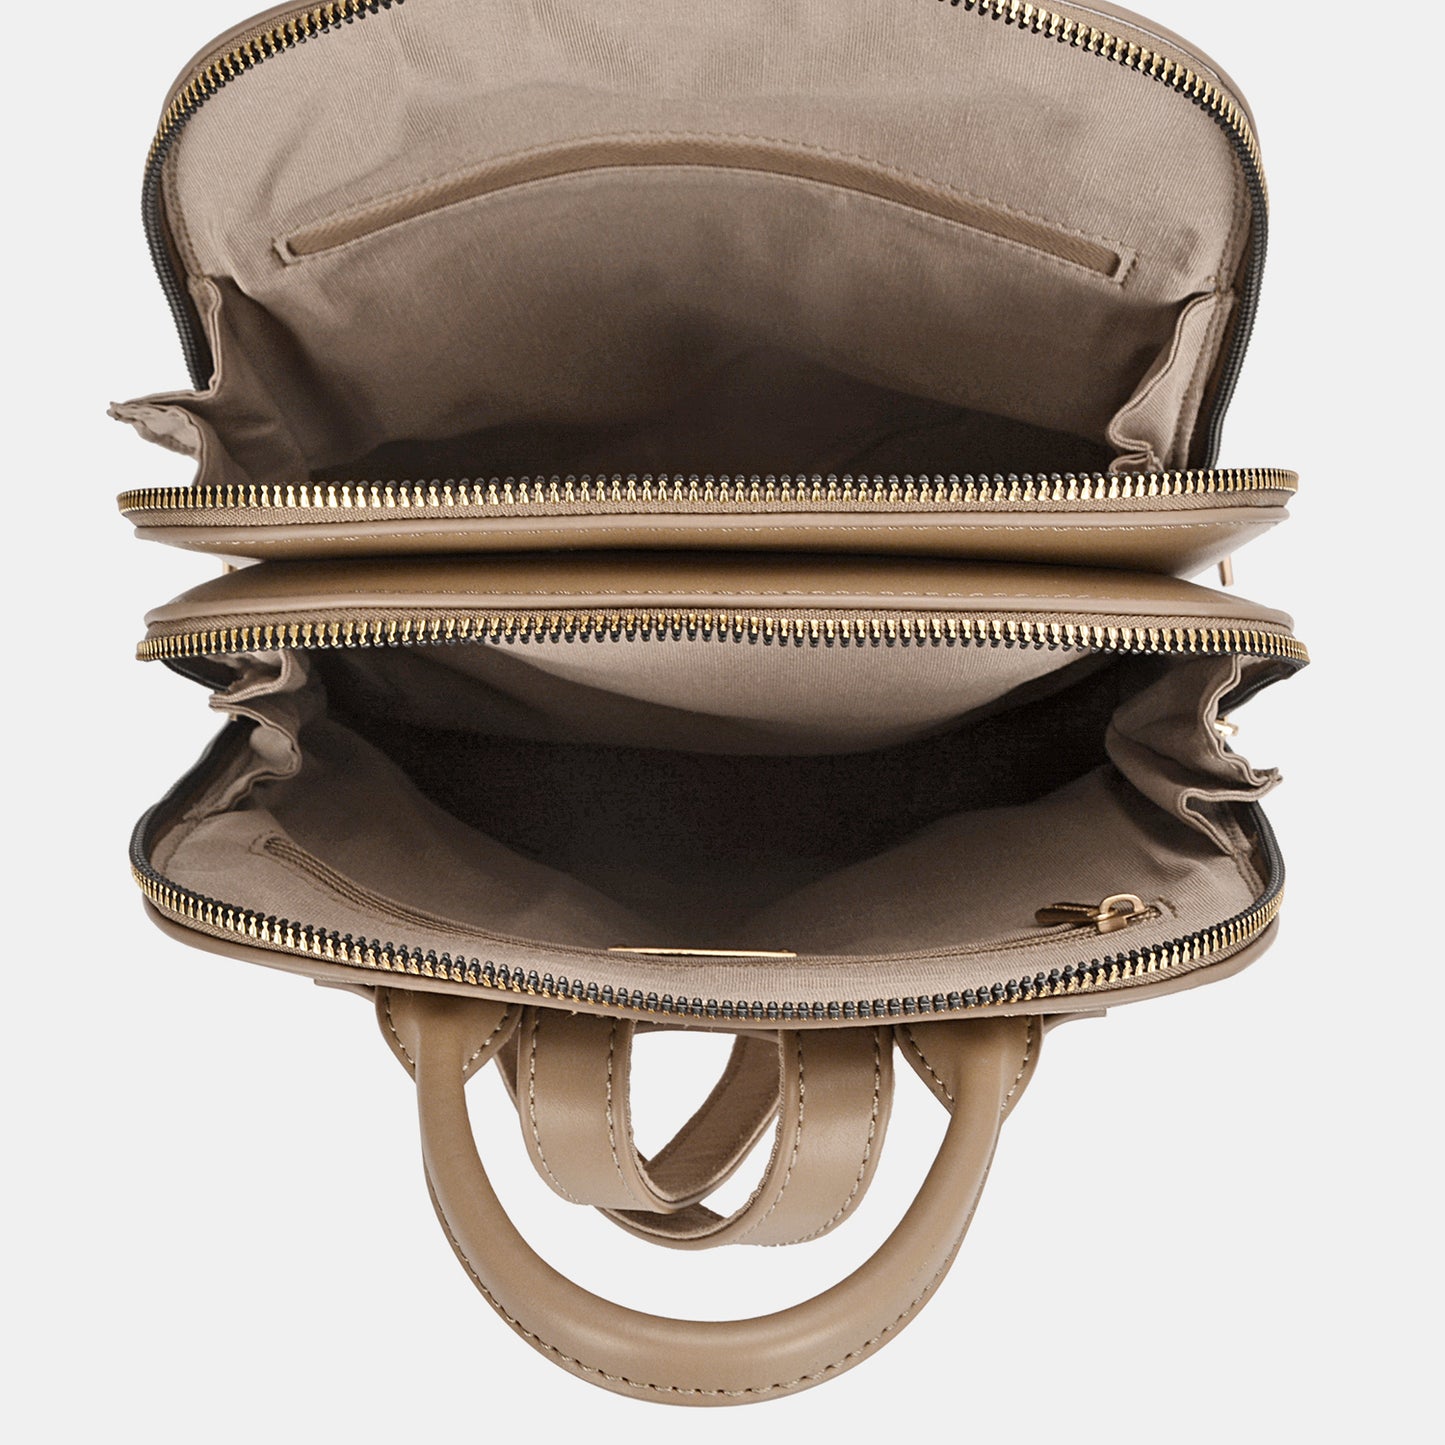 PU Leather Adjustable Straps Backpack Bag